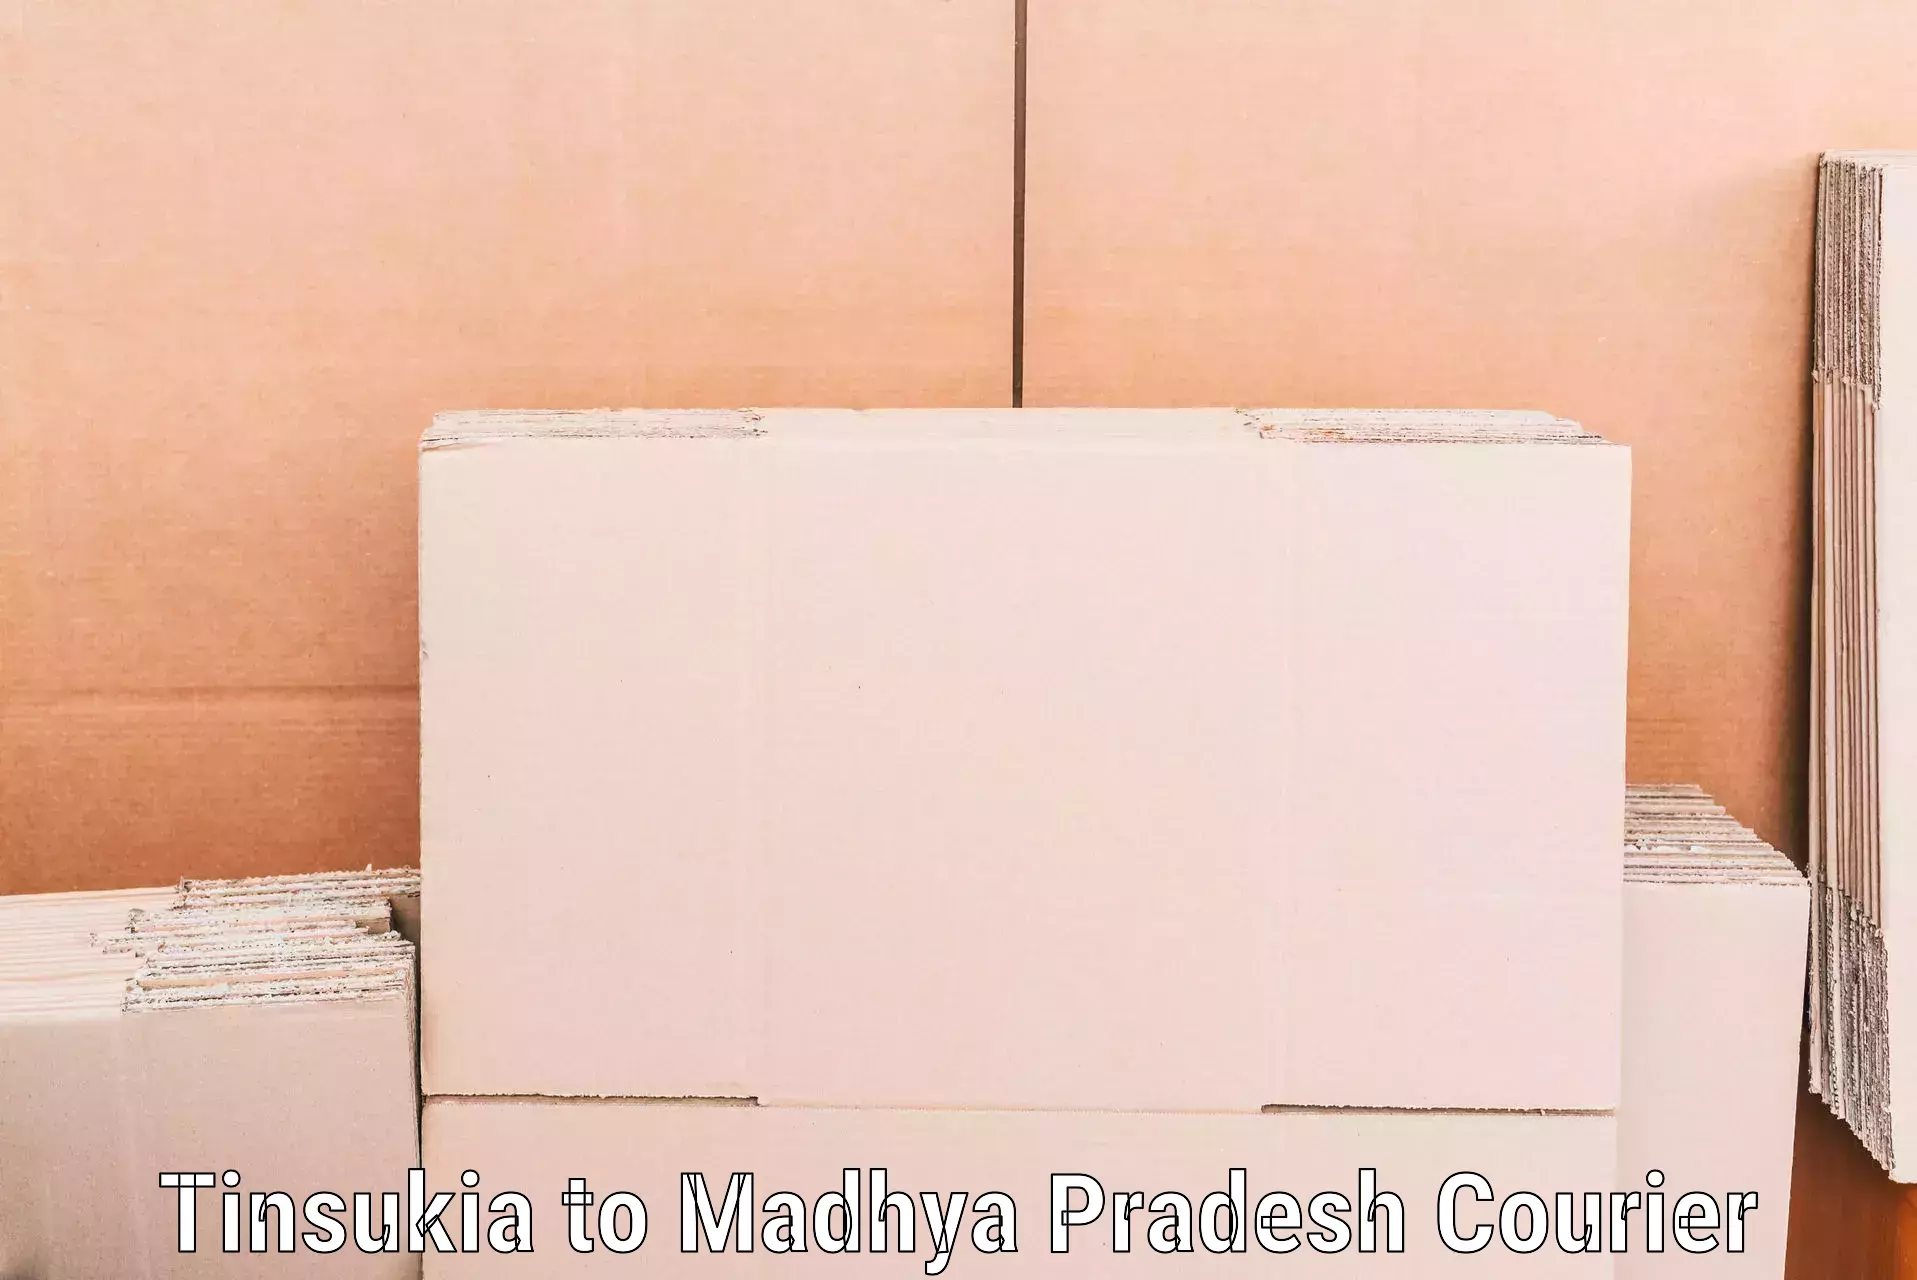 Professional packing services Tinsukia to Ghatiya